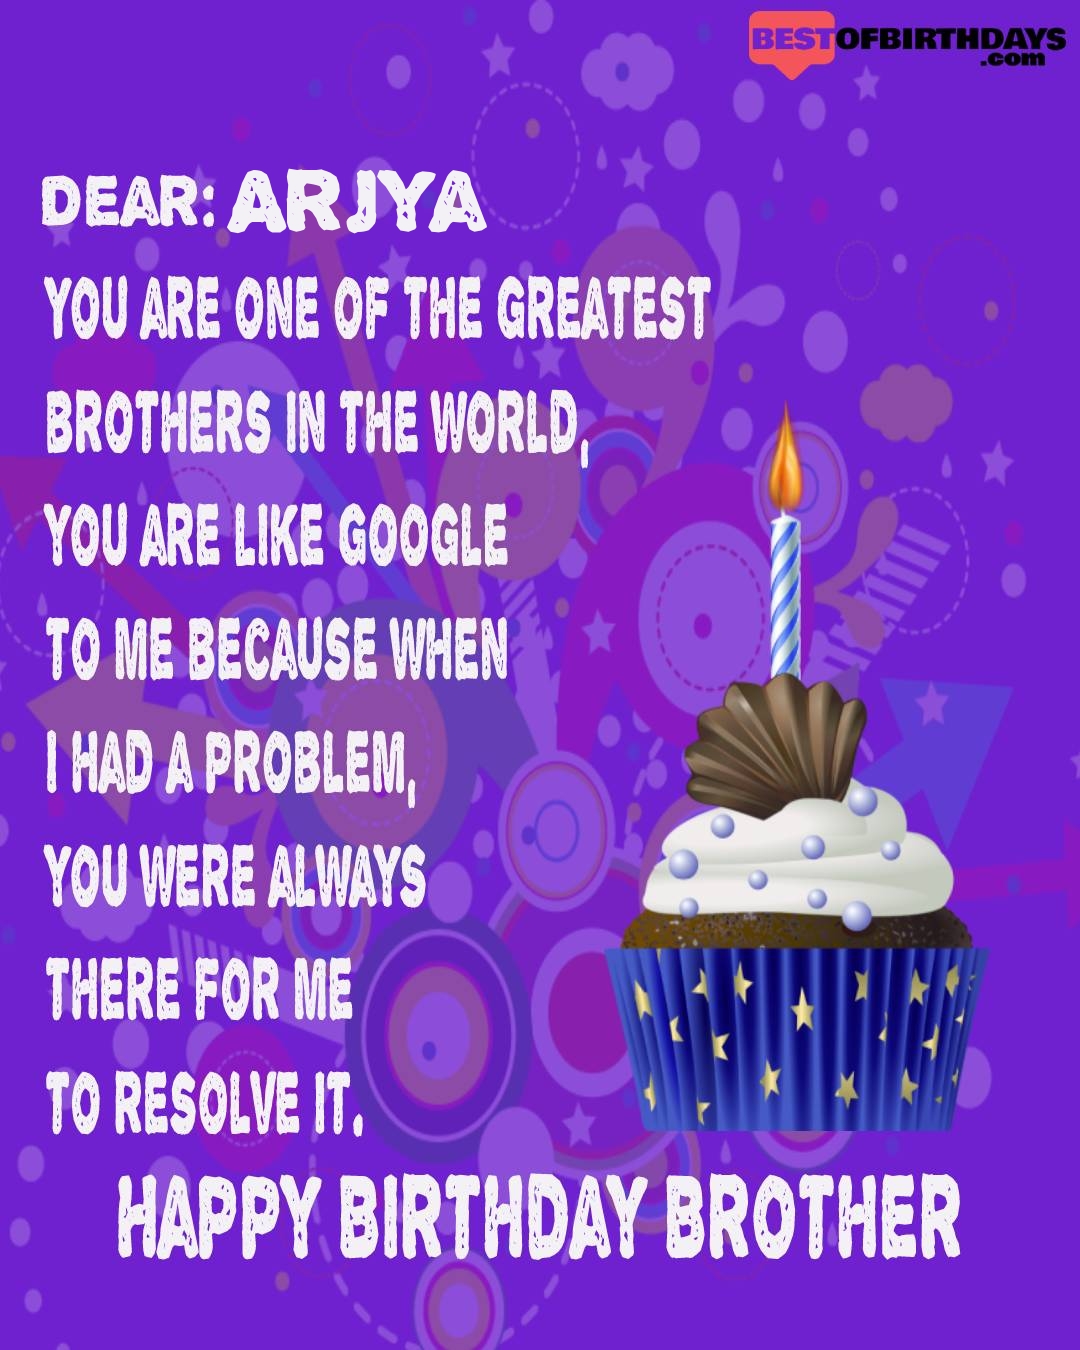 Happy birthday arjya bhai brother bro